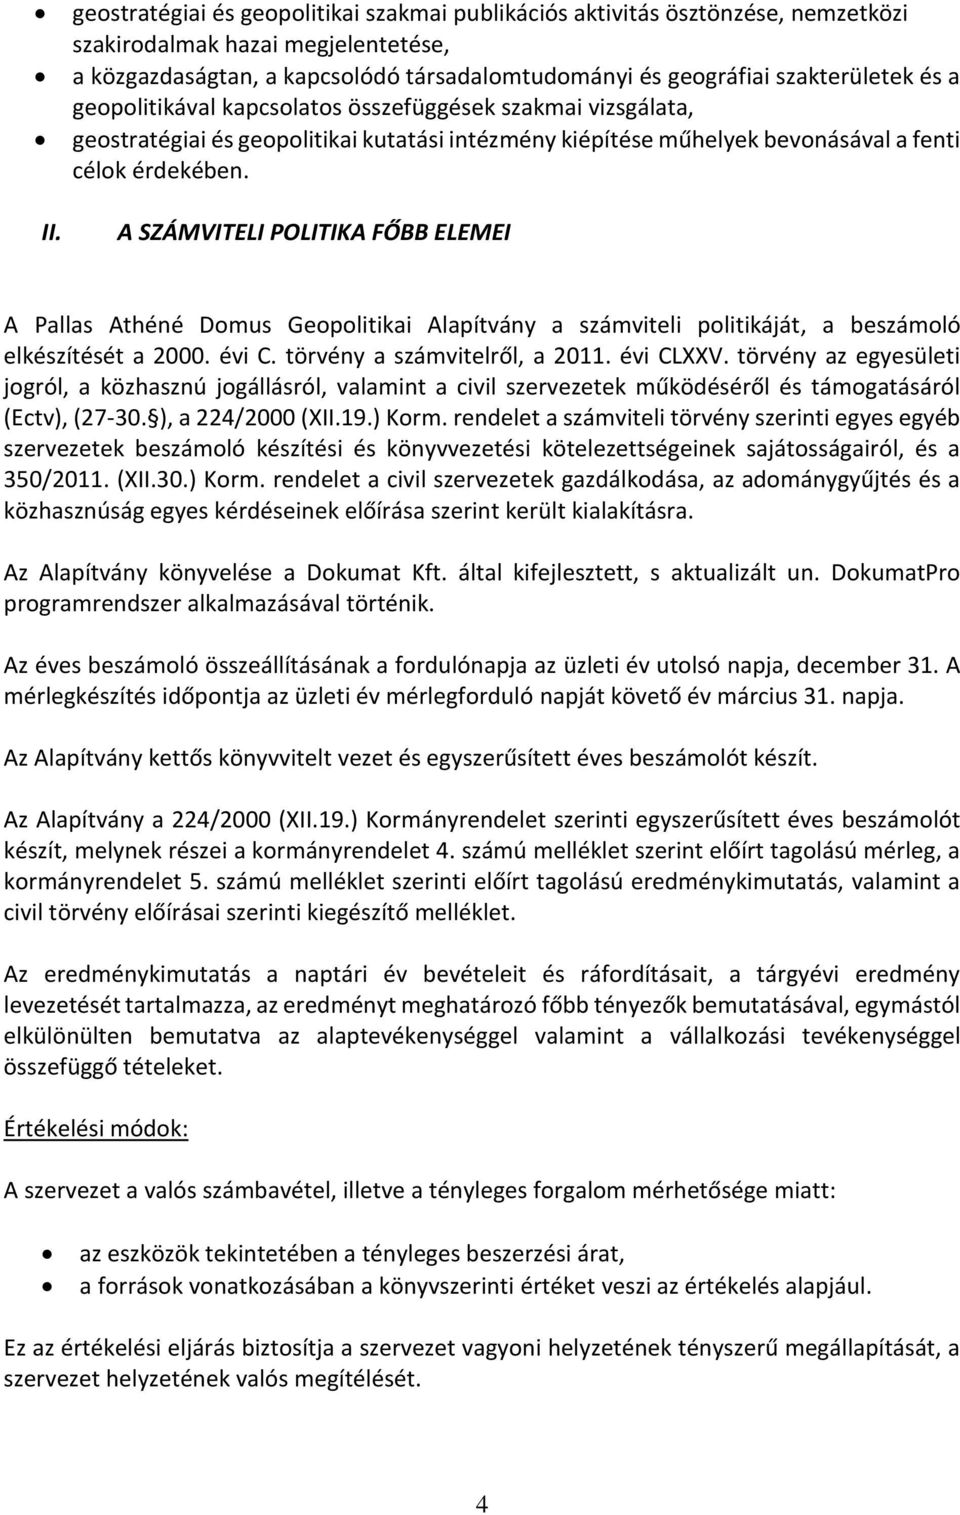 A SZÁMVITELI POLITIKA FŐBB ELEMEI A Pallas Athéné Domus Geopolitikai Alapítvány a számviteli politikáját, a beszámoló elkészítését a 2000. évi C. törvény a számvitelről, a 2011. évi CLXXV.